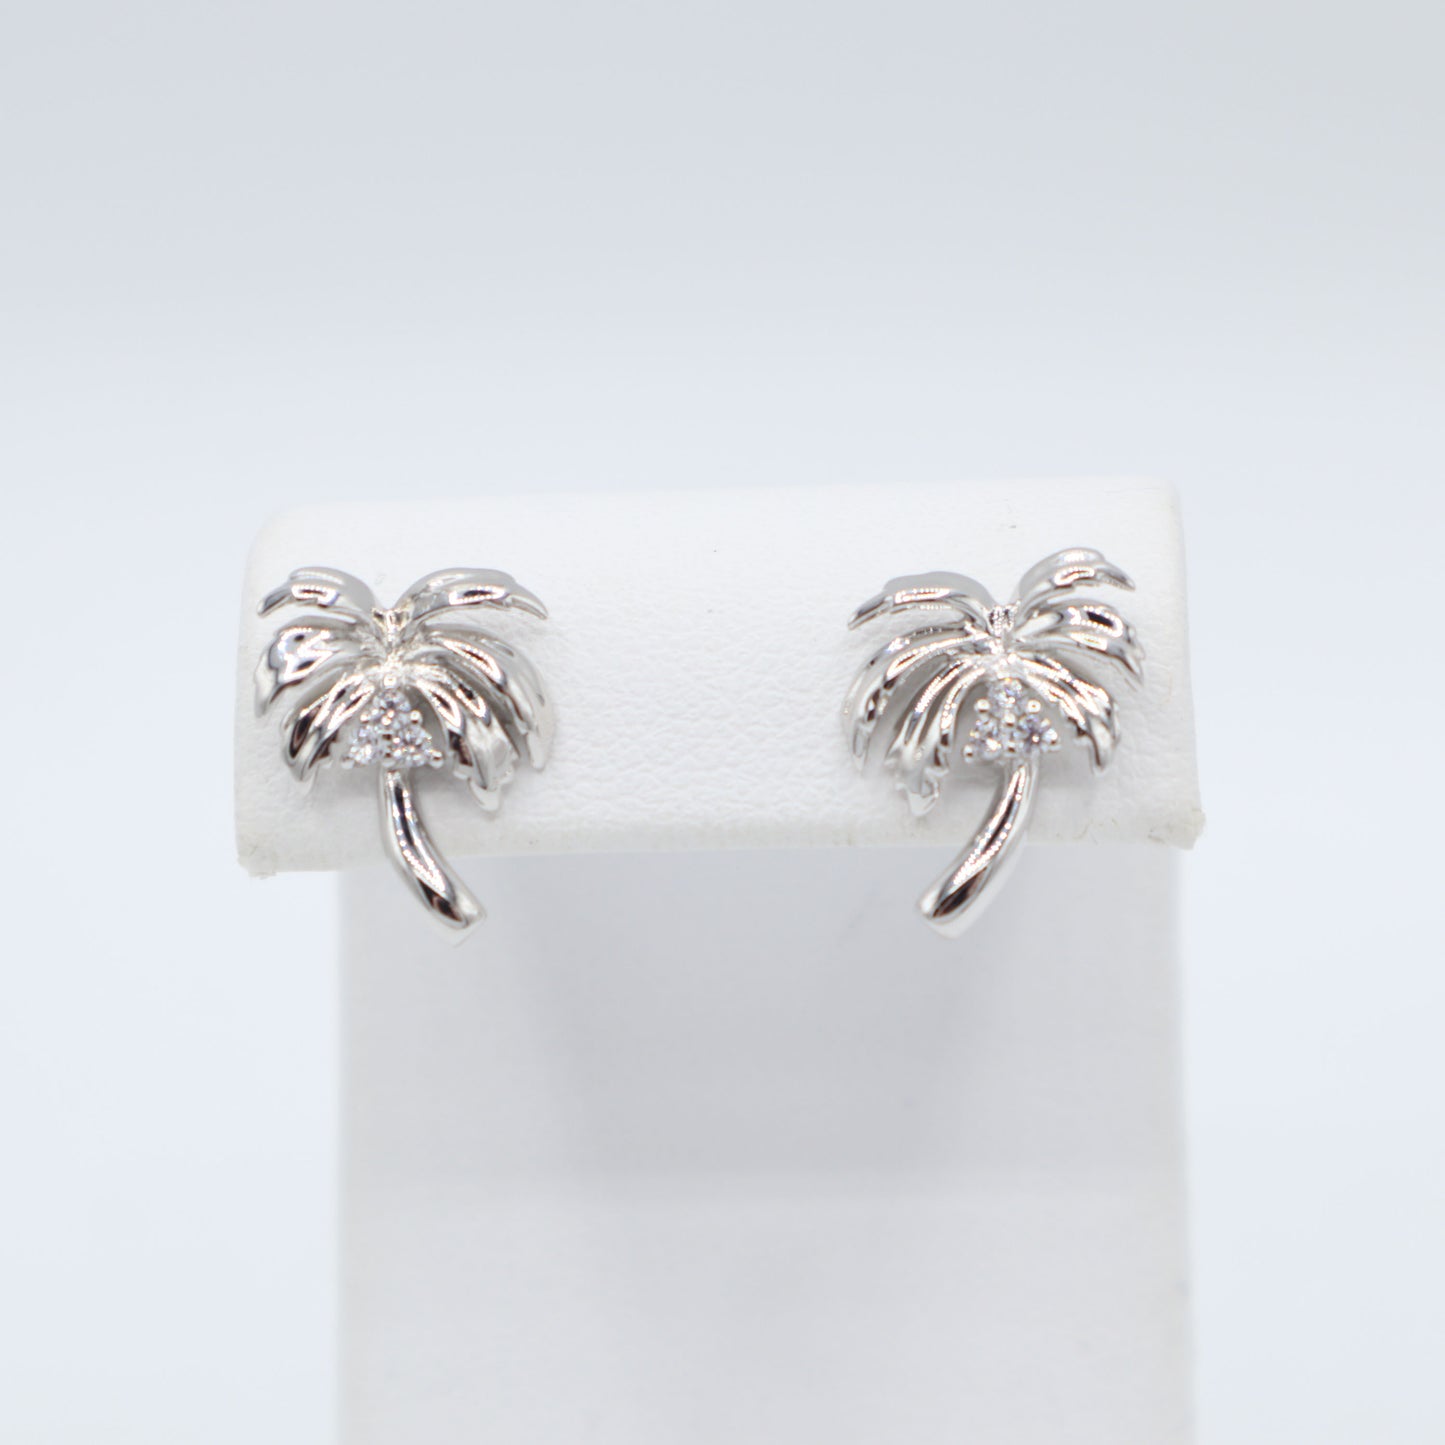 Sterling Silver Palm Tree Earrings